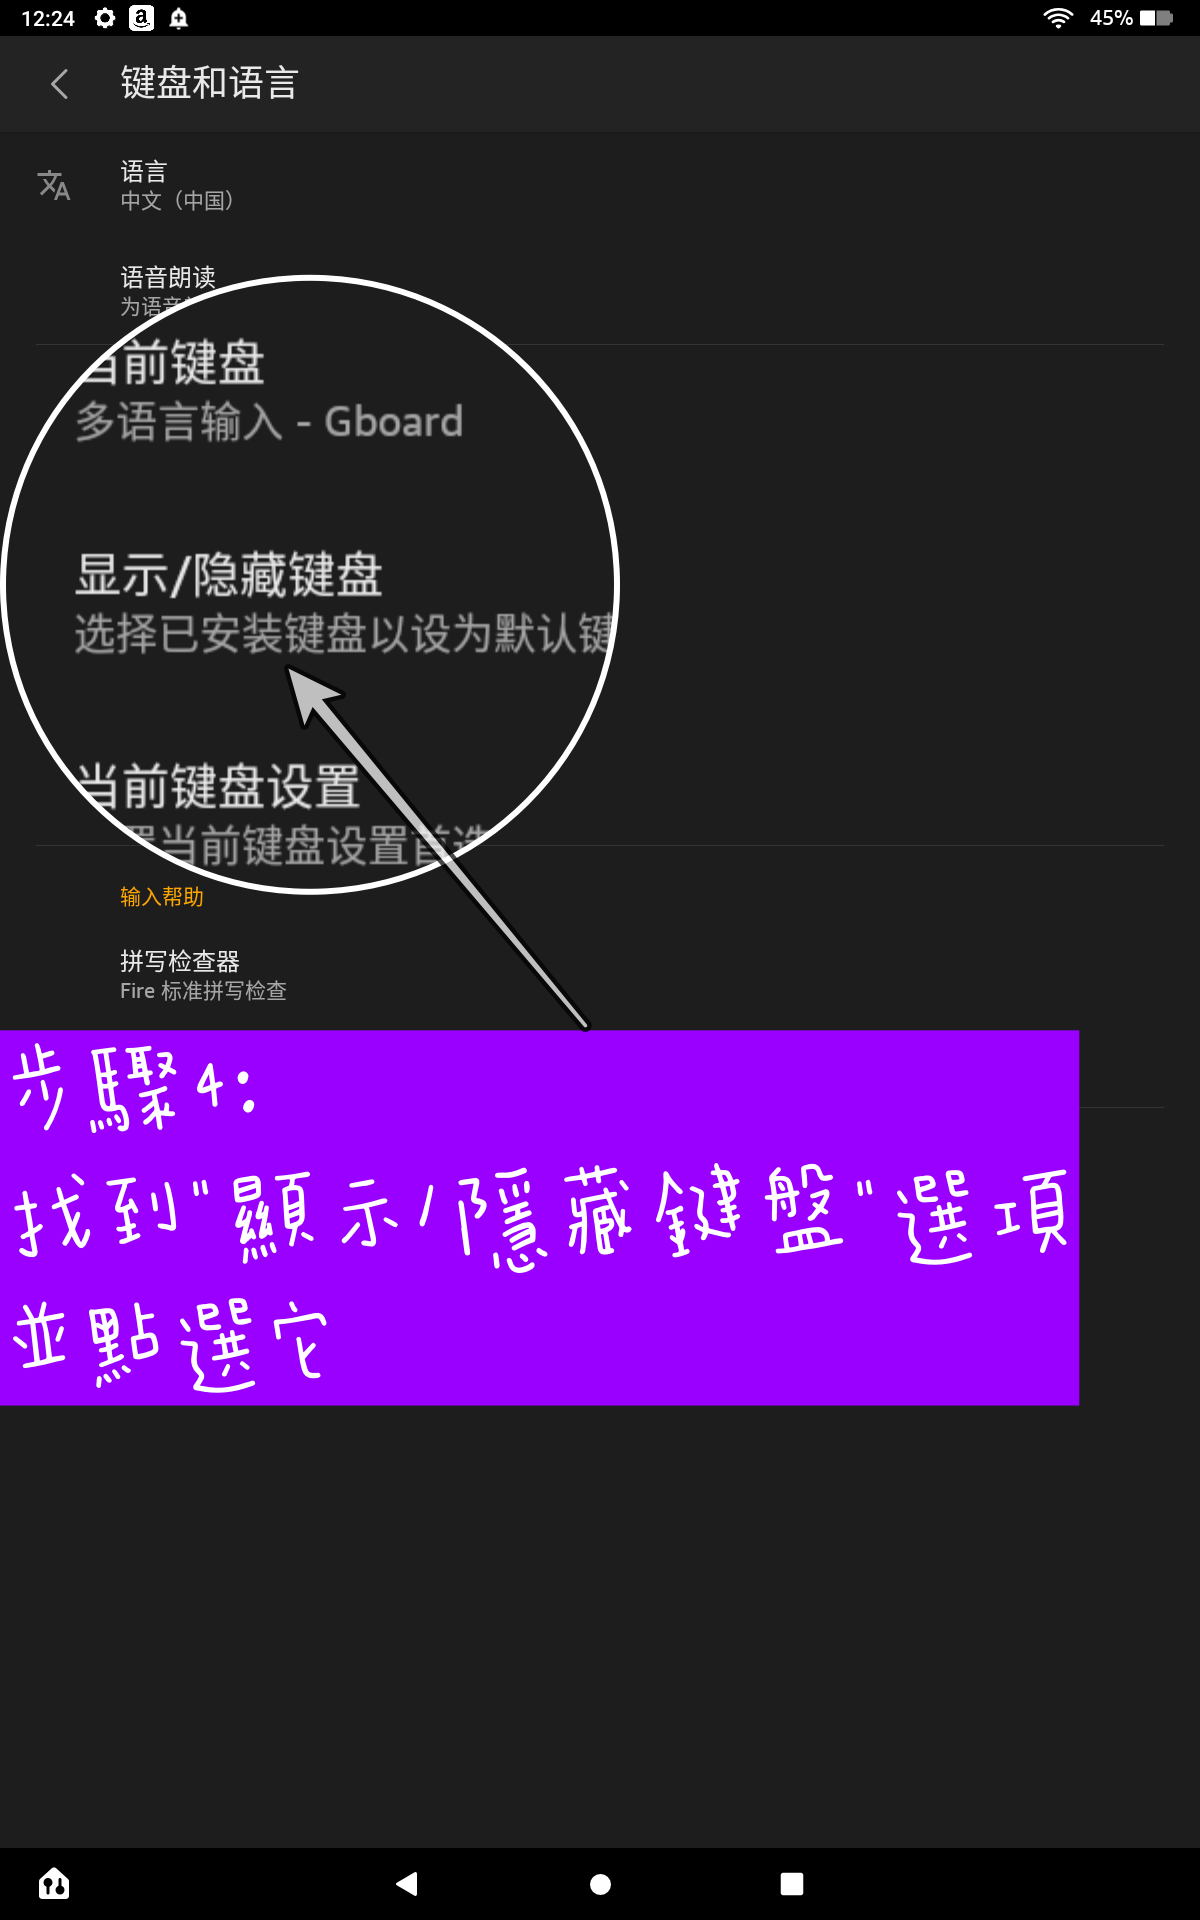 啟用AMAZON FIRE HD 10內建繁體中文輸入法 步驟4 找到顯示/隱藏鍵盤選項並點選它